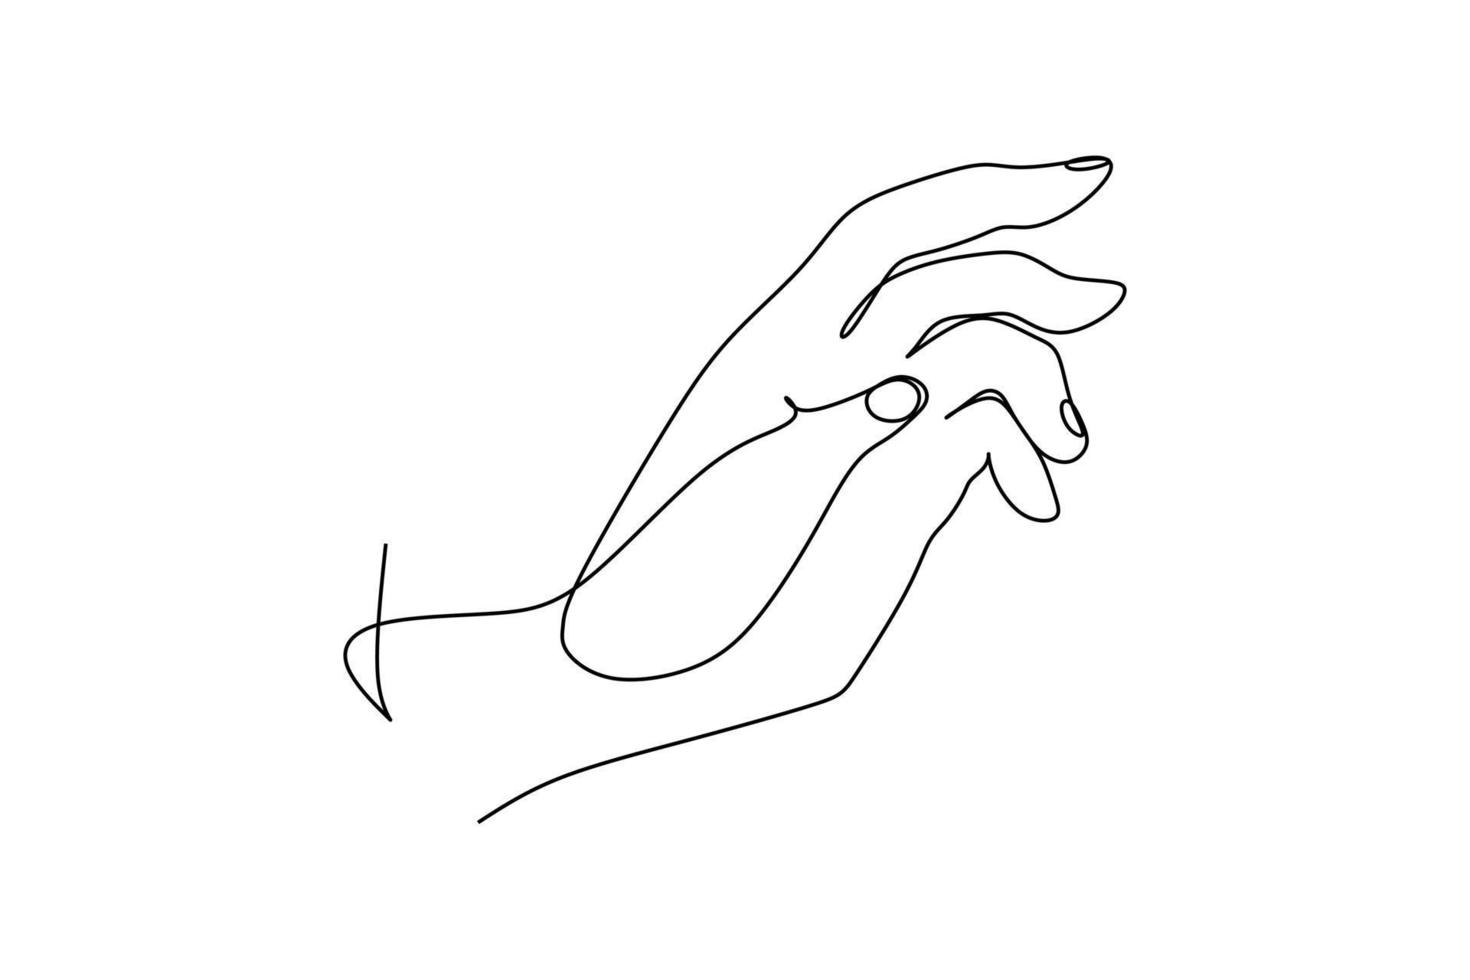 ligne de main continue non peinte tirée de la silhouette de l'image de la main. dessin au trait. illustration vectorielle de style dessiné à la main vecteur